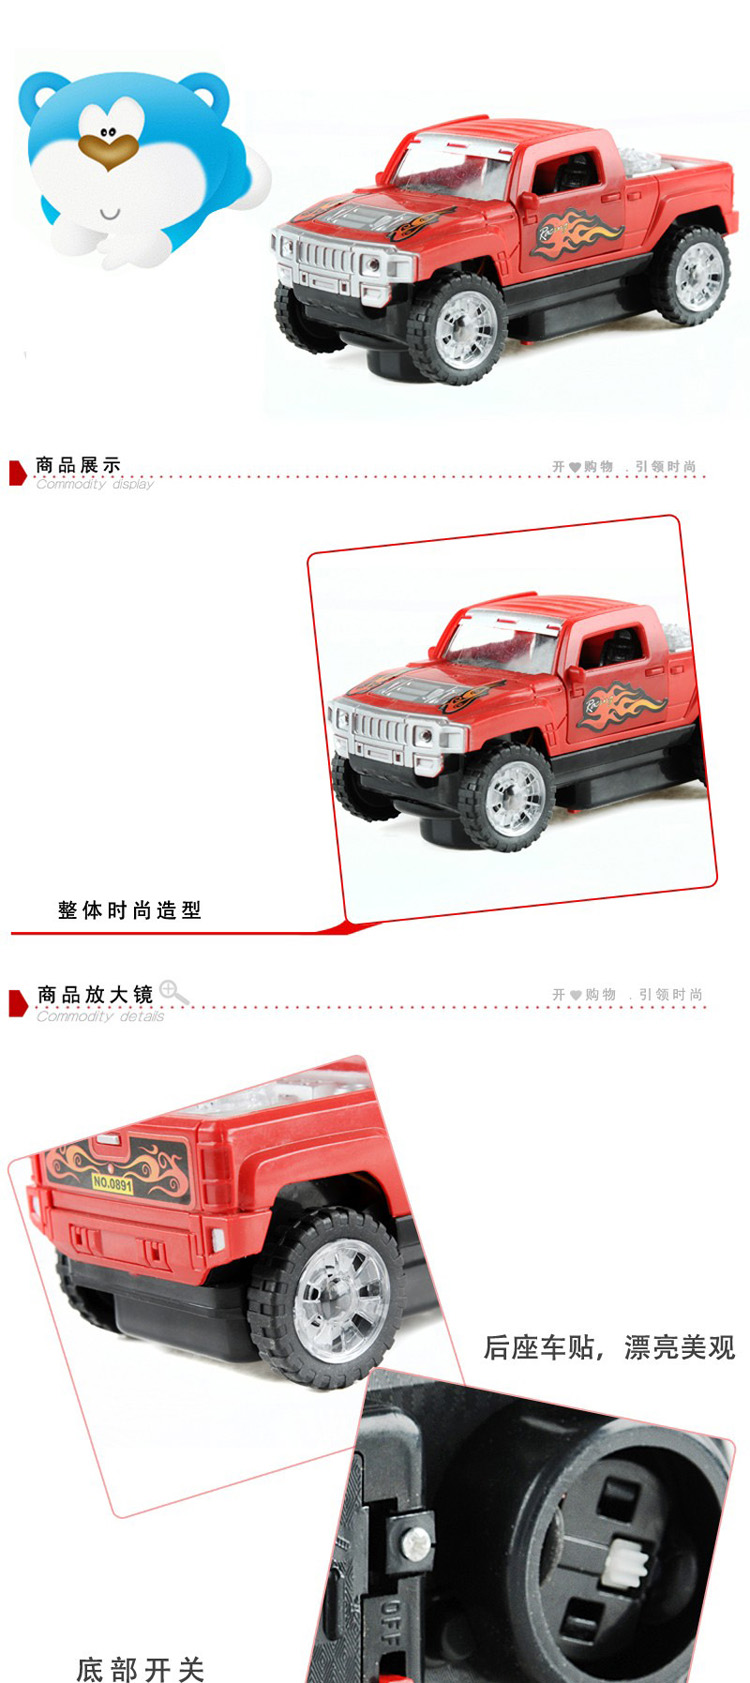 普润 卡车玩具 儿童音乐皮卡车玩具 颜色随机发送 。